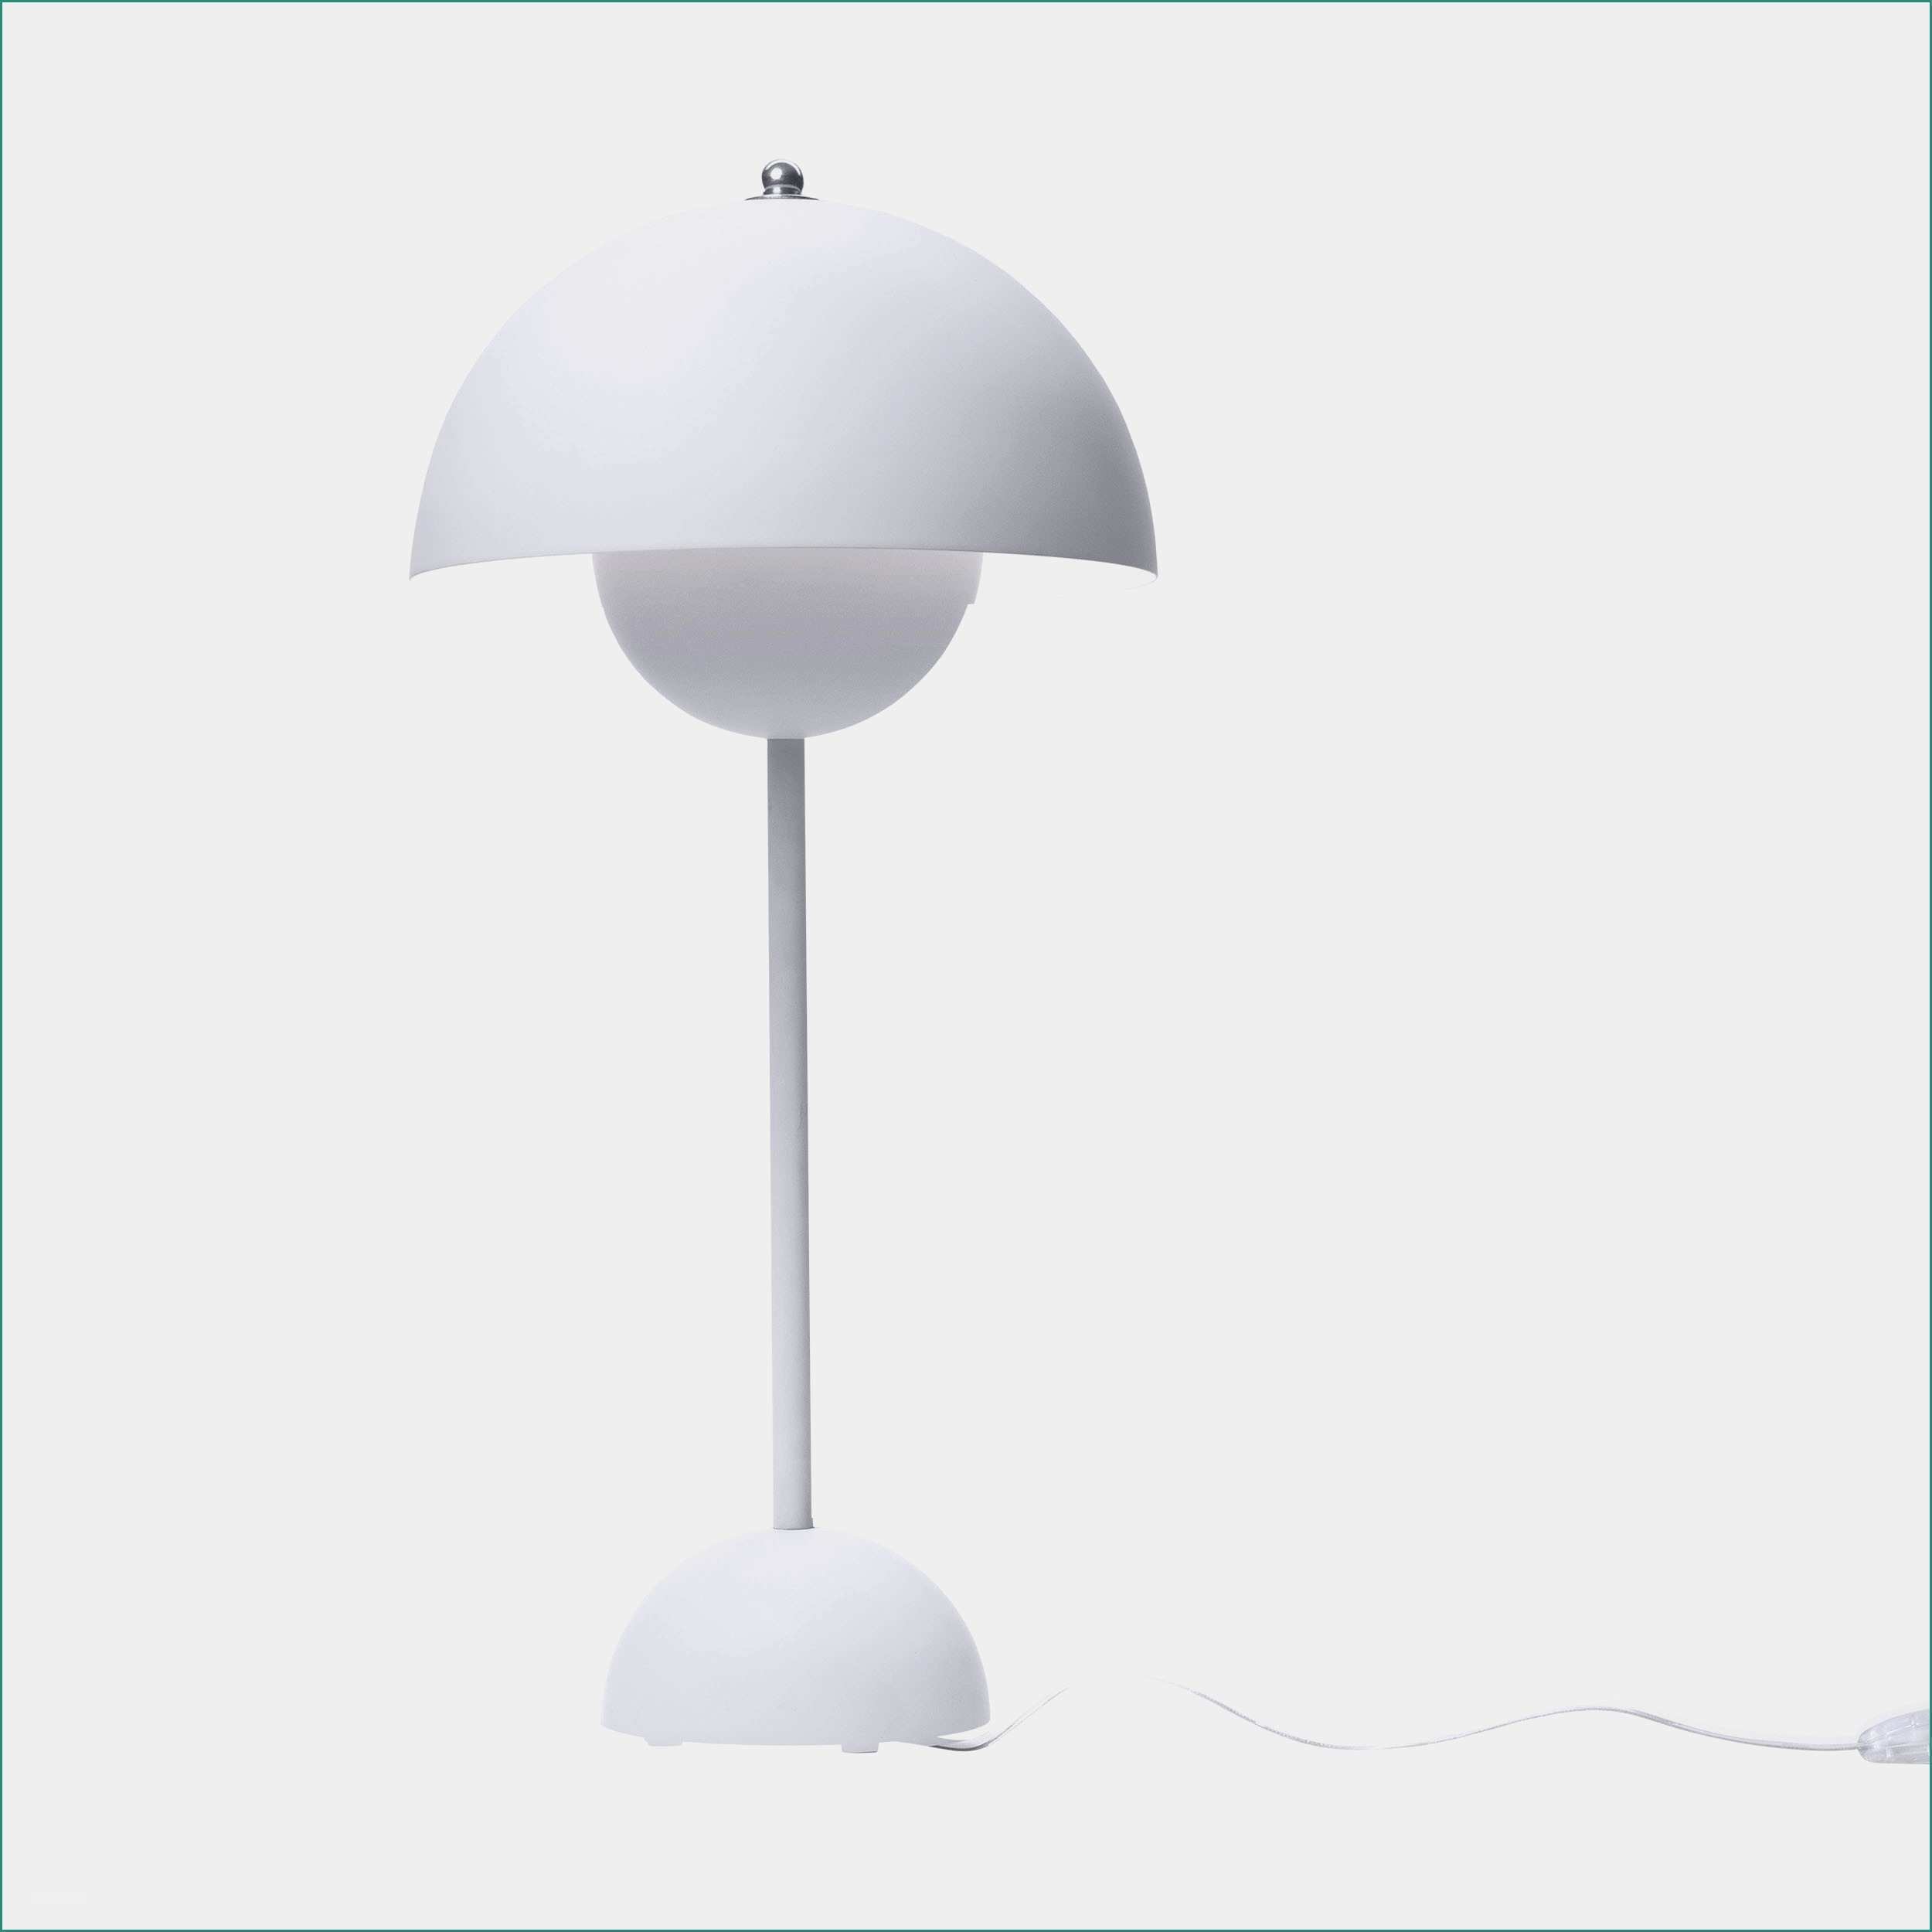 Lampade Da soffitto Moderne E Elegante Lampada Ikea Decorazioni Per La Casa